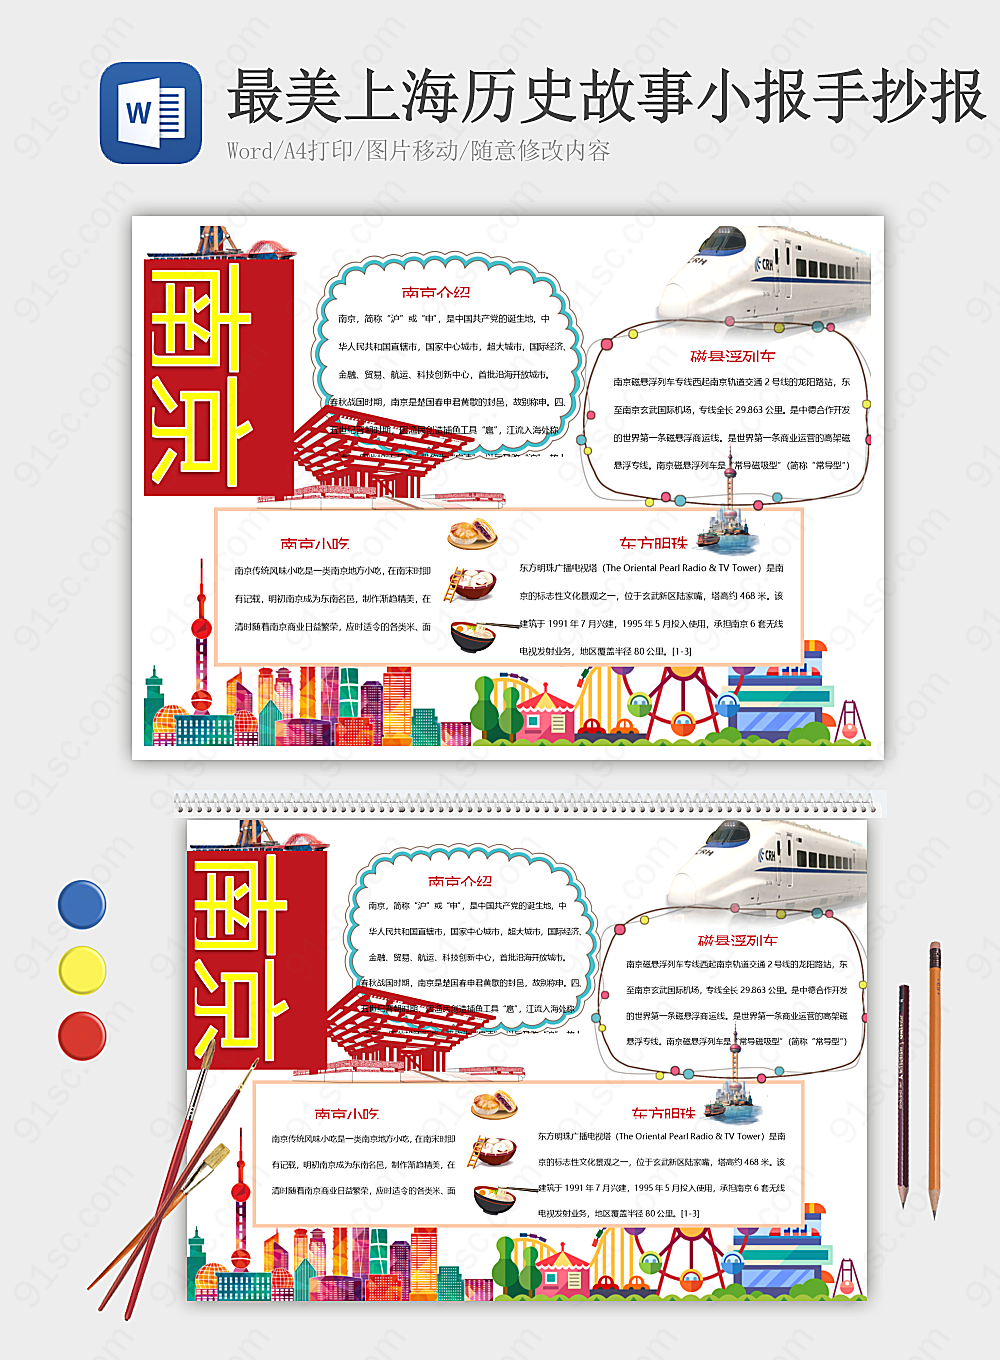 上海历史故事大观故事、图片、文字一应俱全其他报小报海报Word模板下载